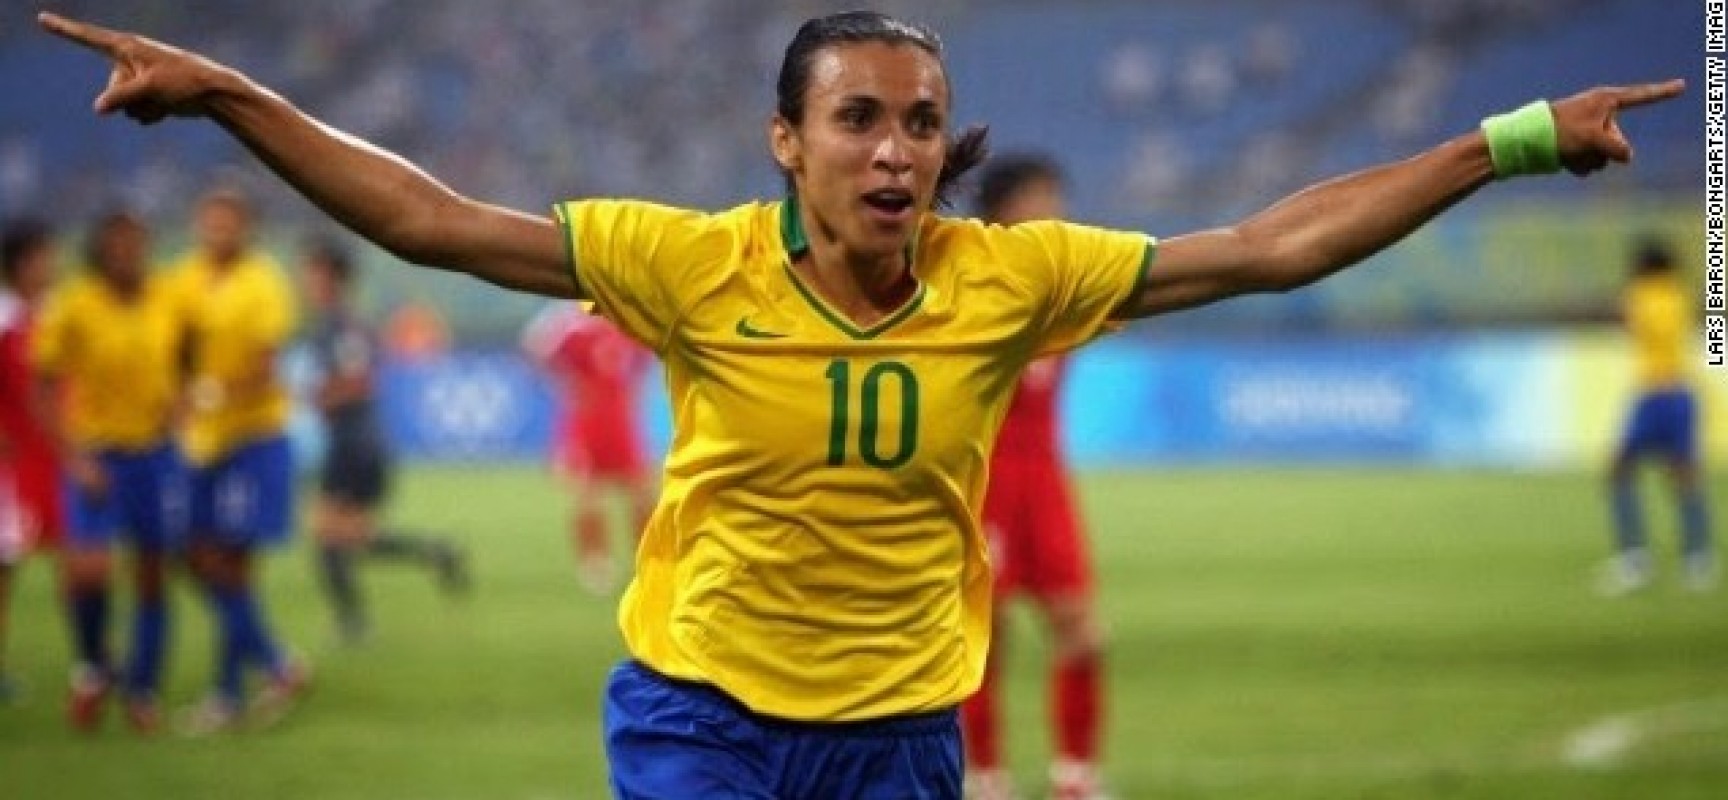 Marta é única brasileira que integra lista de melhores jogadoras da FIFPro